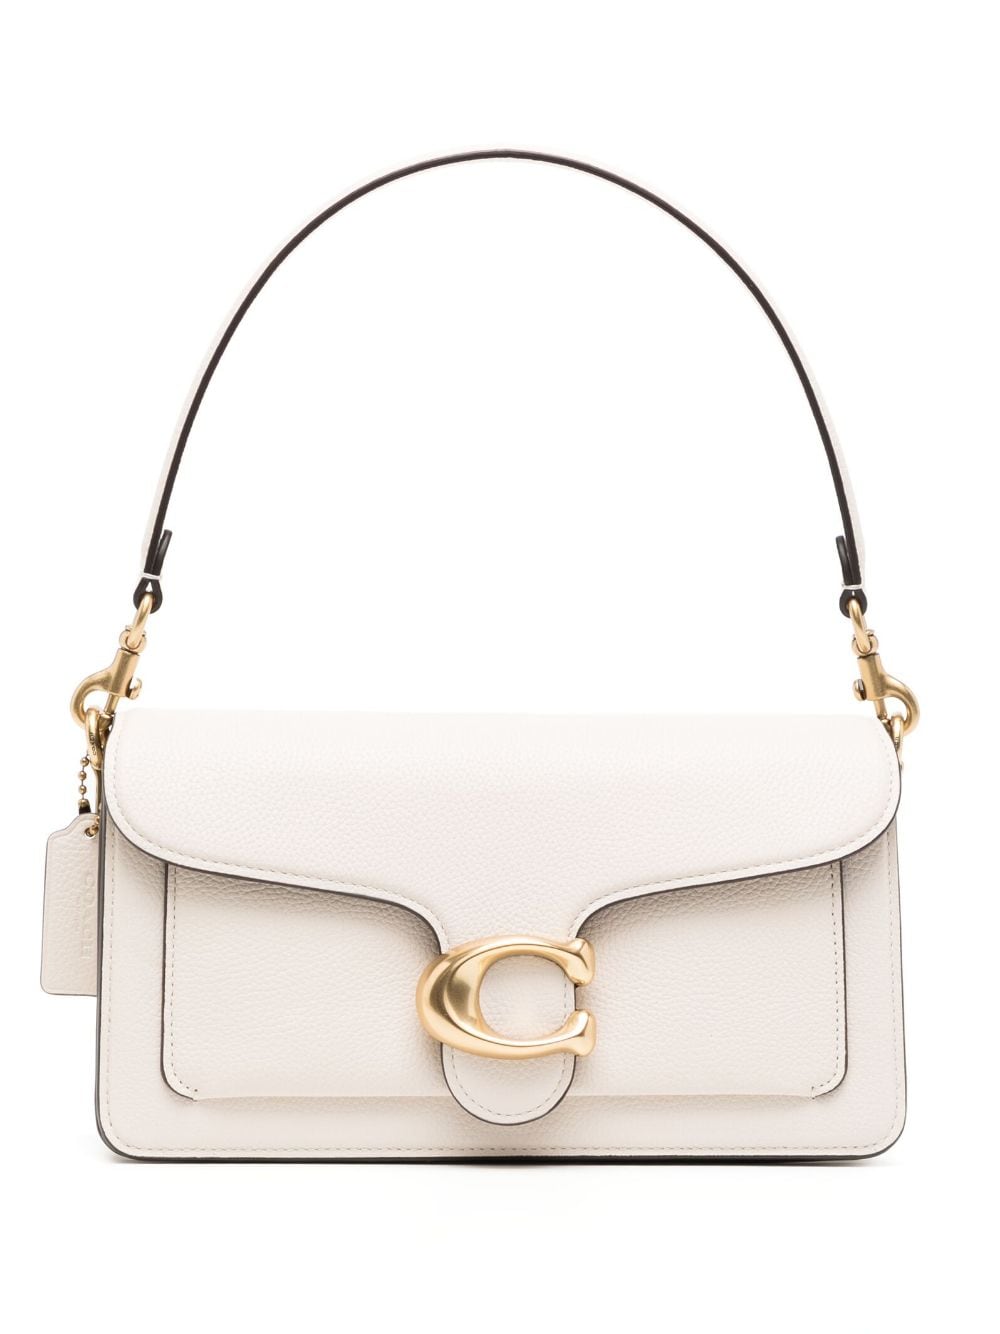 COACH Luxury Shoulder Handbag in Striking Chalk White for Women